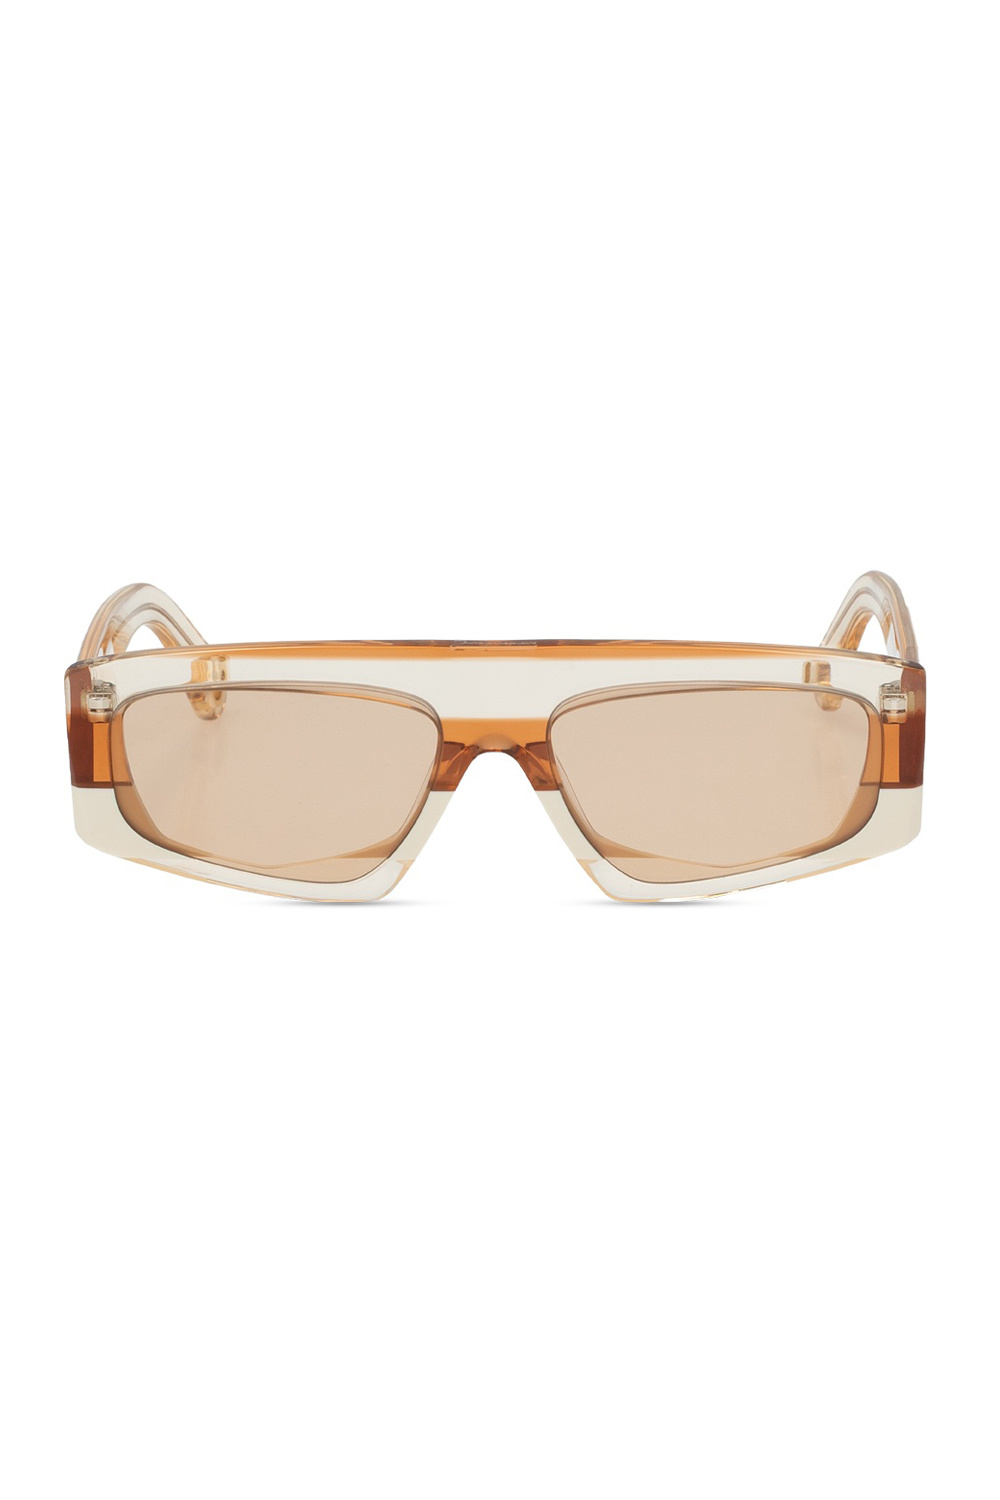 Jacquemus ‘Yauco’ sunglasses